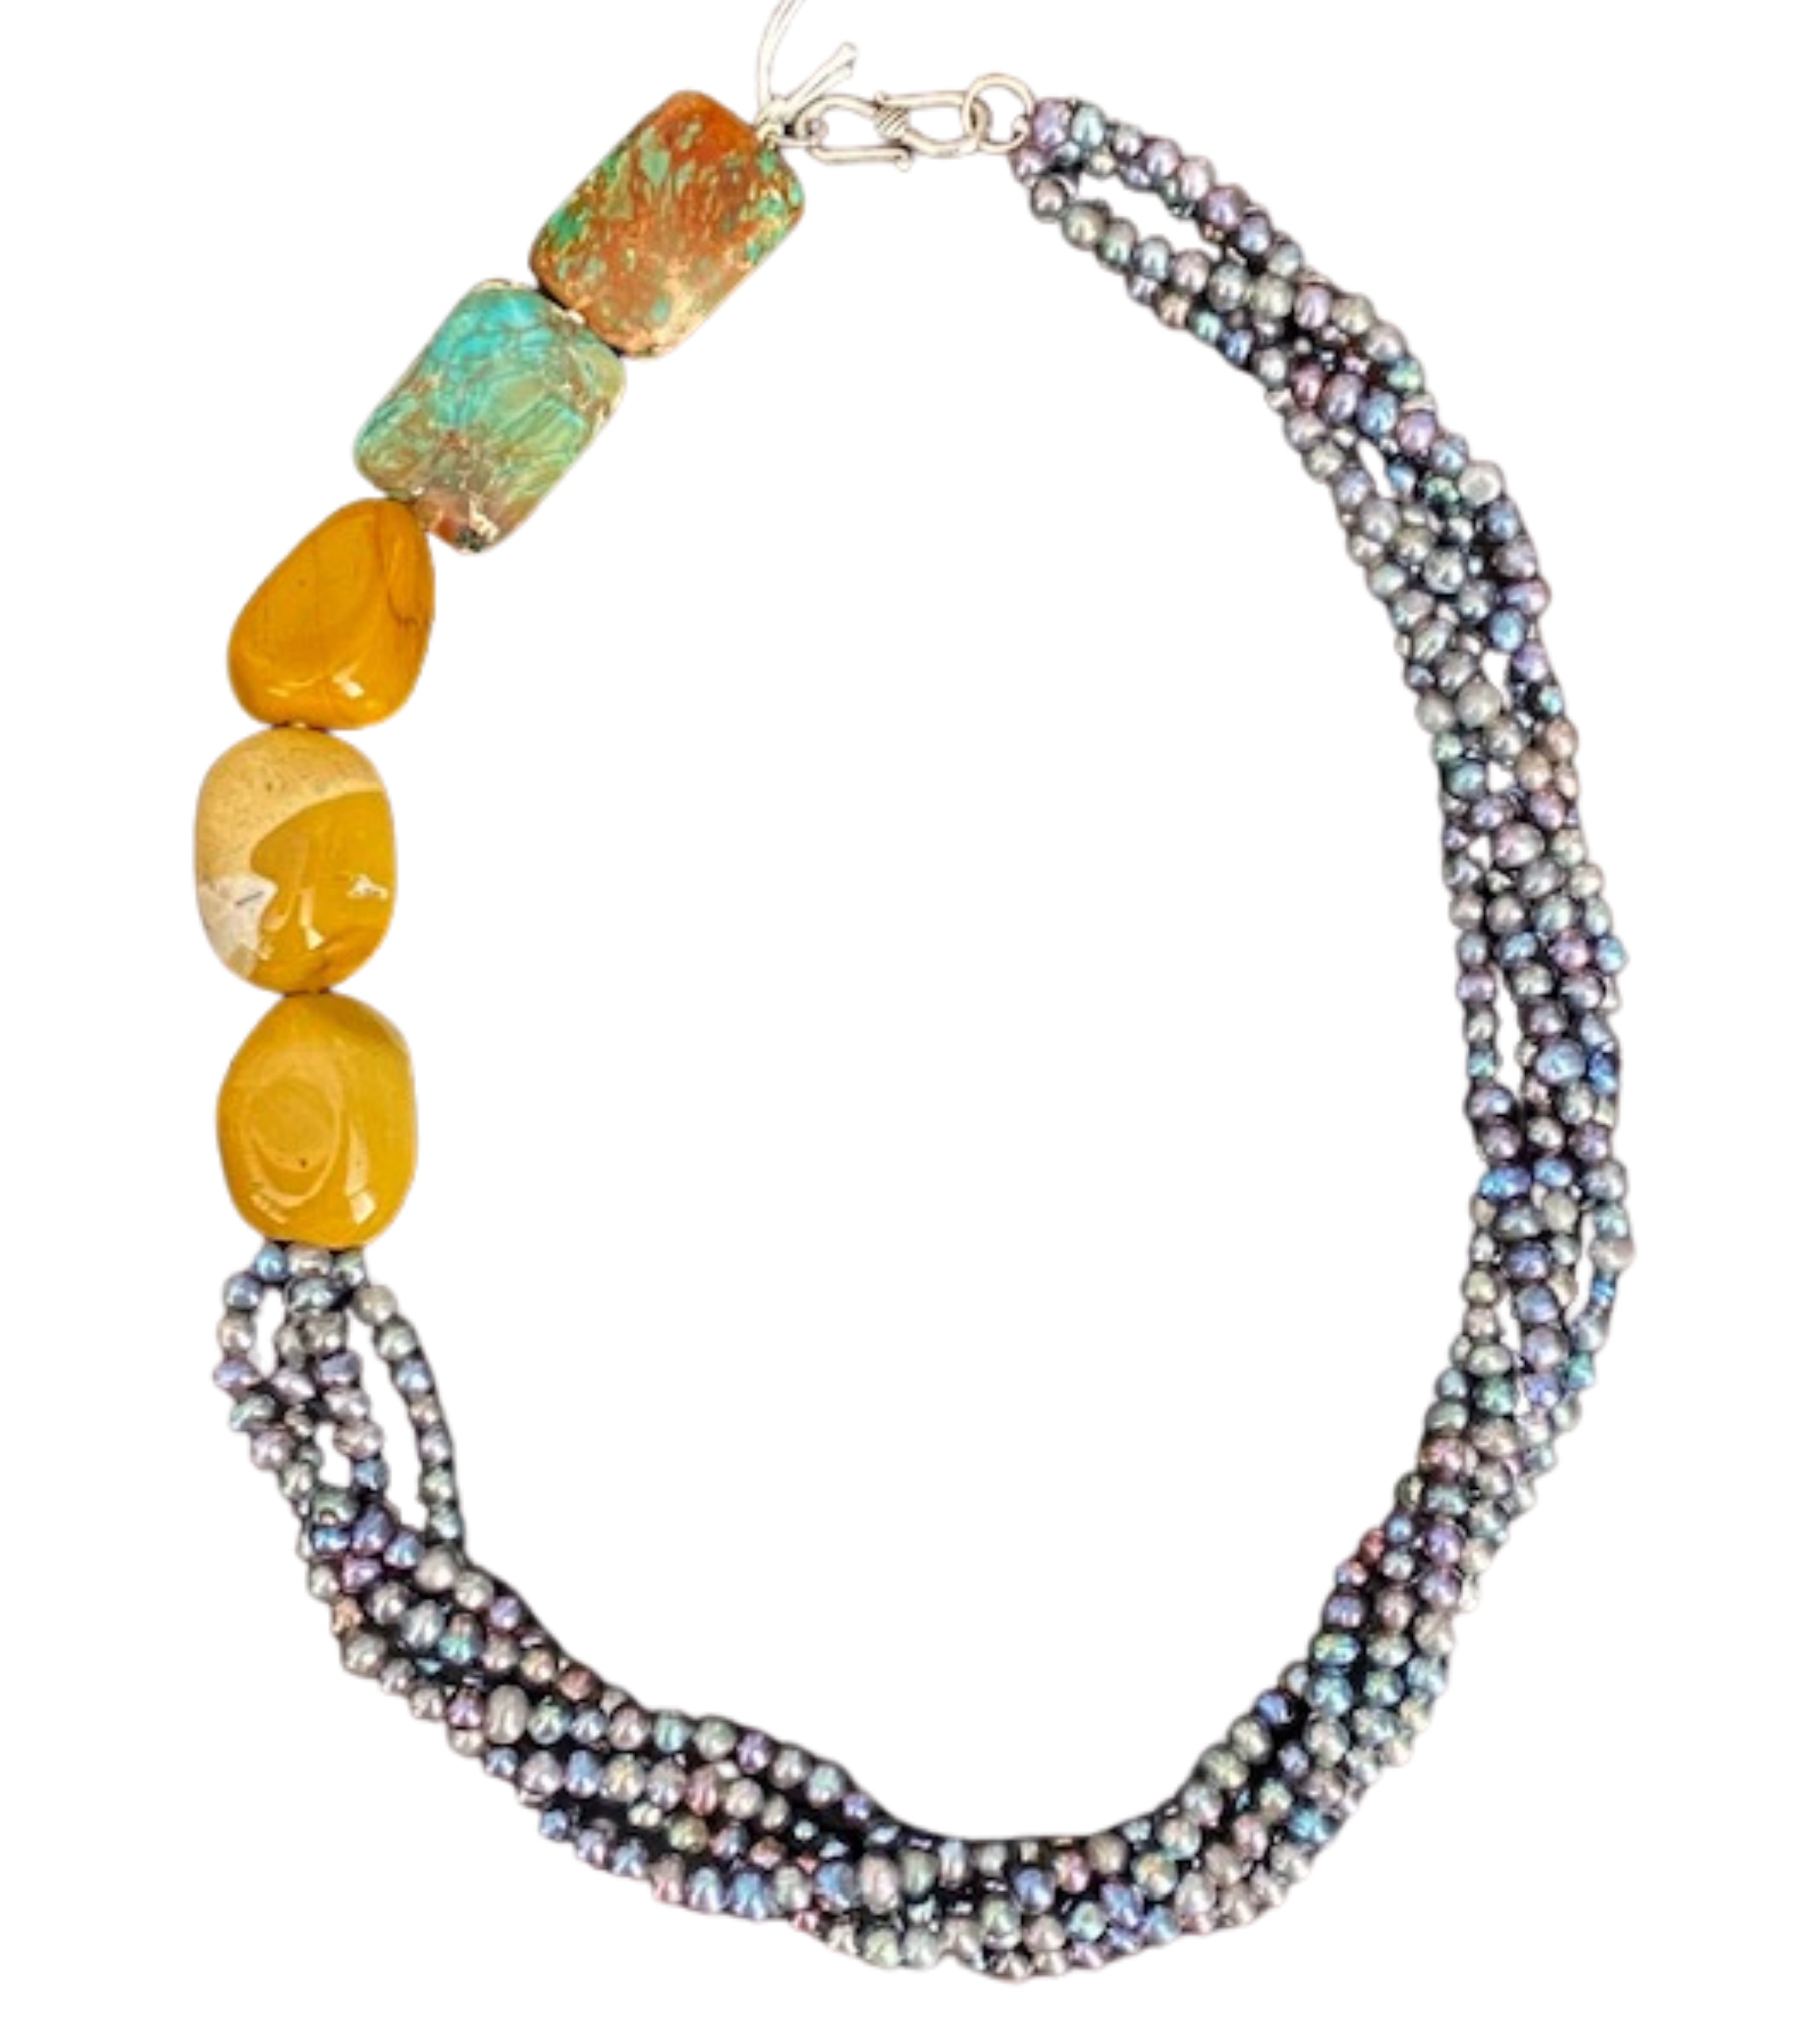 สร้อยคอมุกน้ำจืดและอาเกต. Modern style Agate and fresh water pearl necklace. Beautiful colors of agate in this stylish designer necklace.